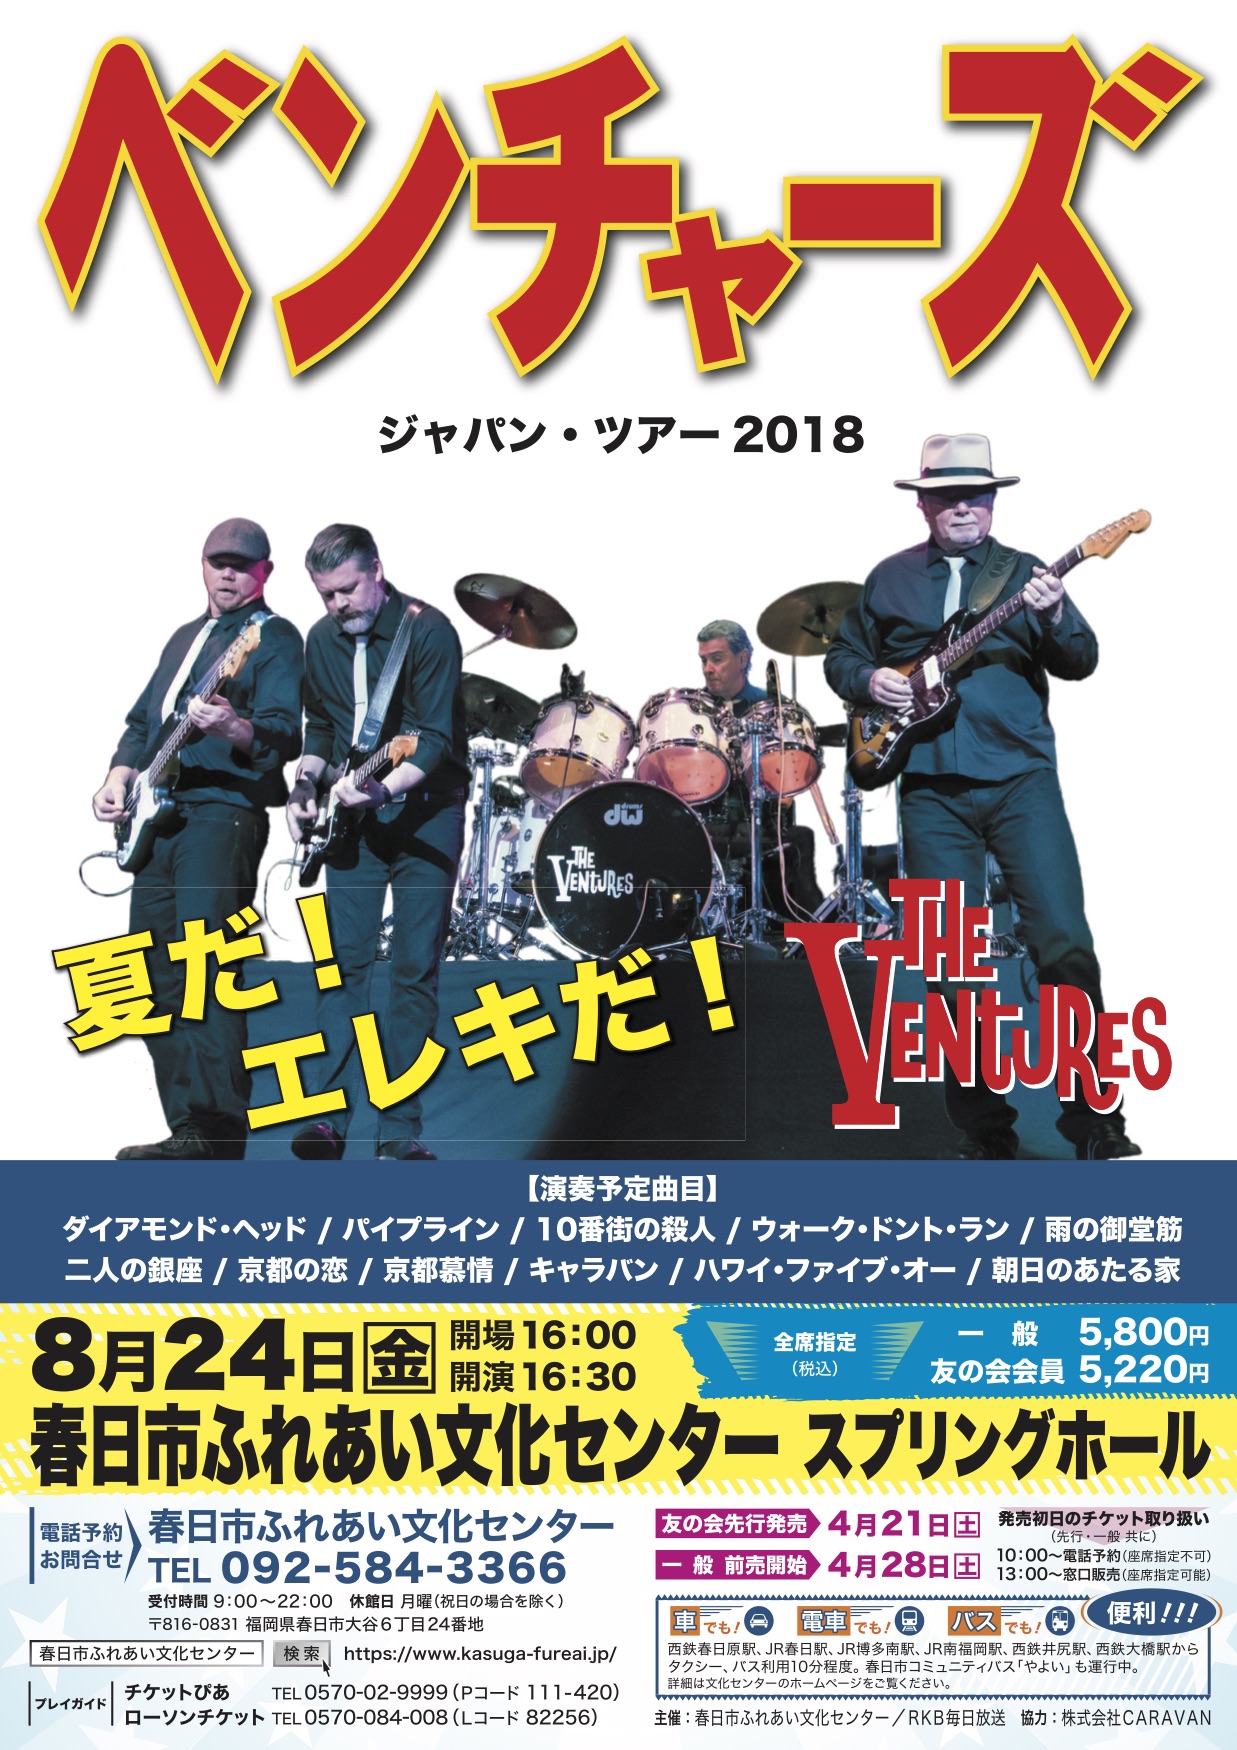 ベンチャーズ ジャパン・ツアー2018